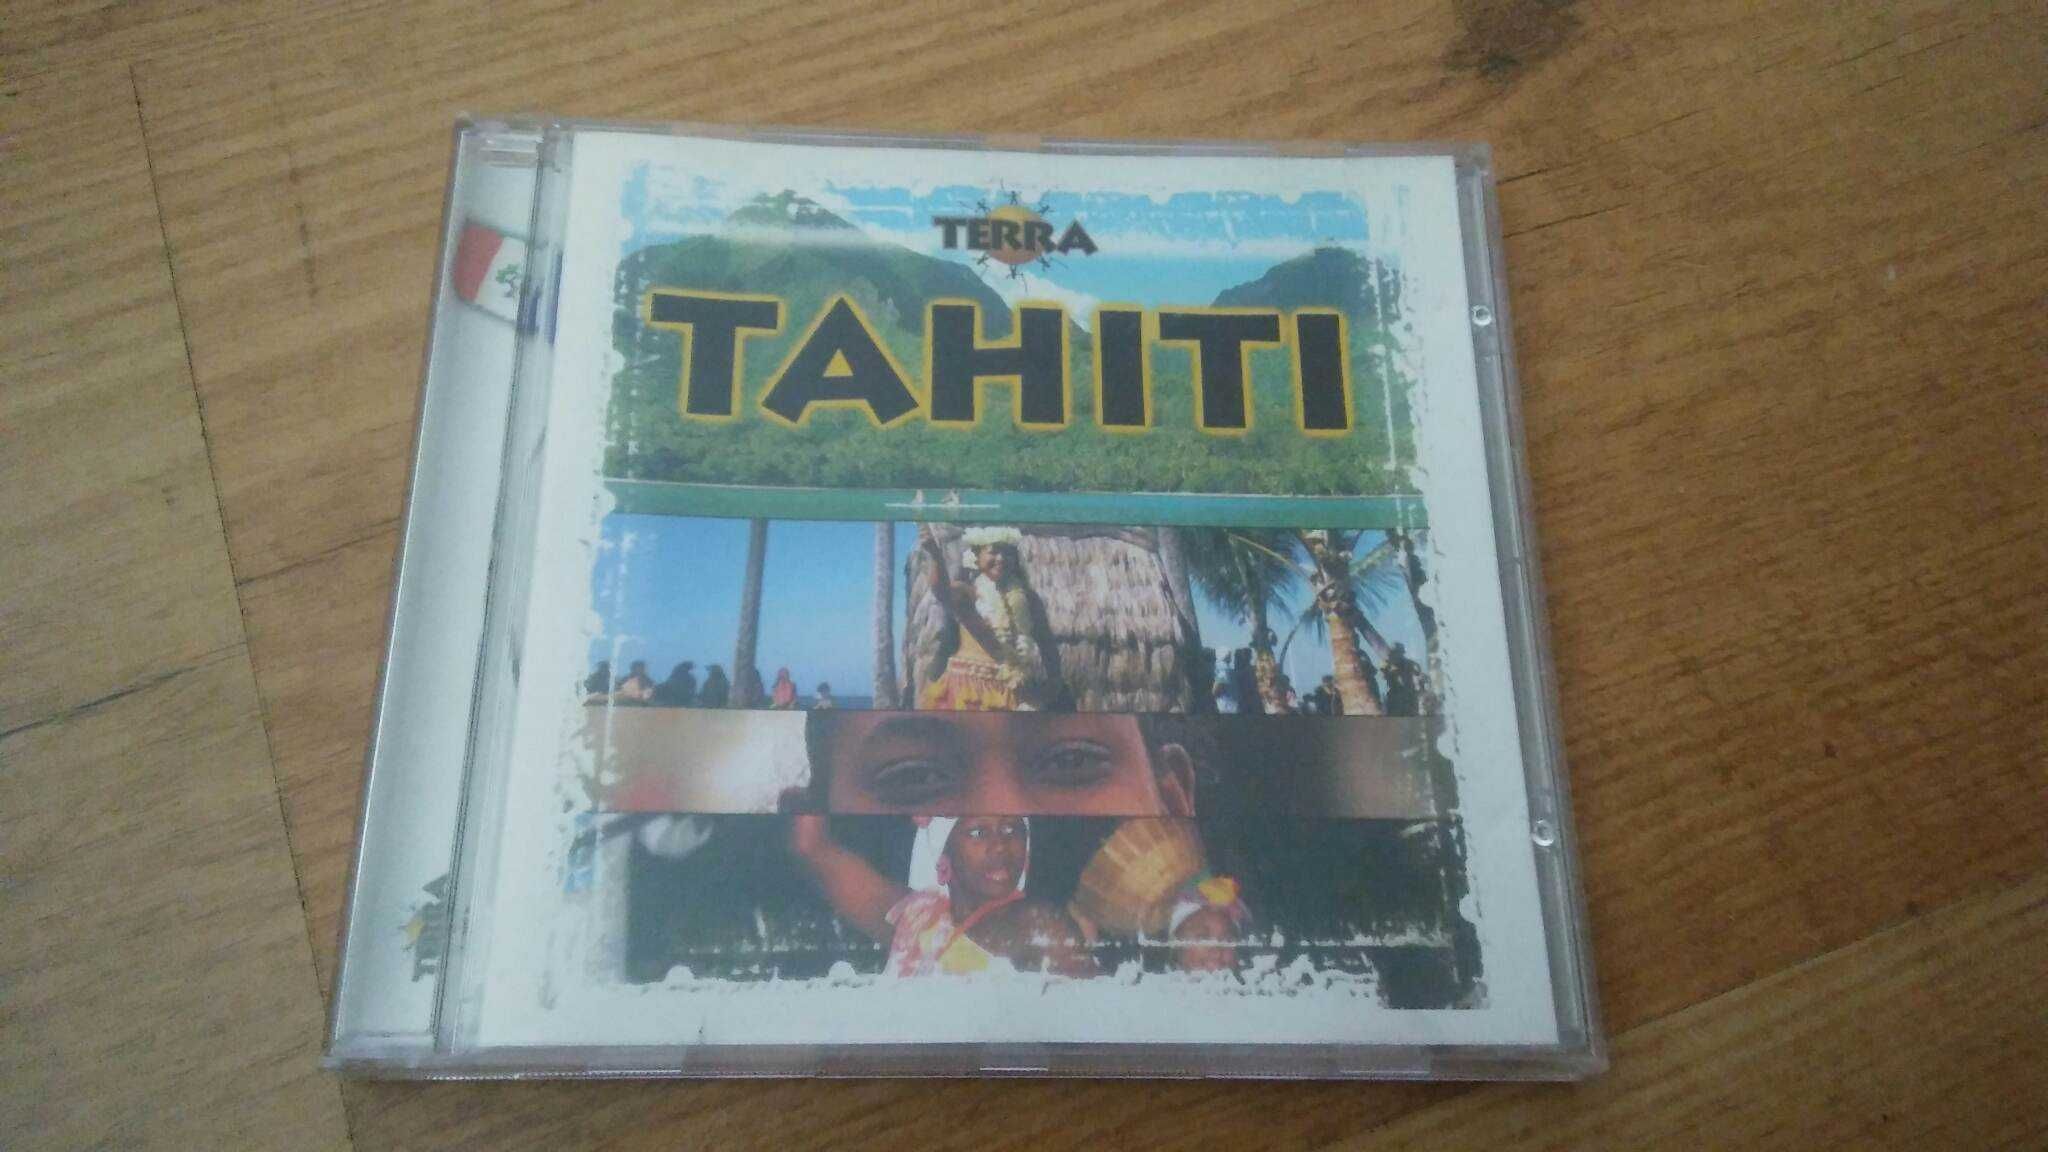 CD - Terra - Tahiti